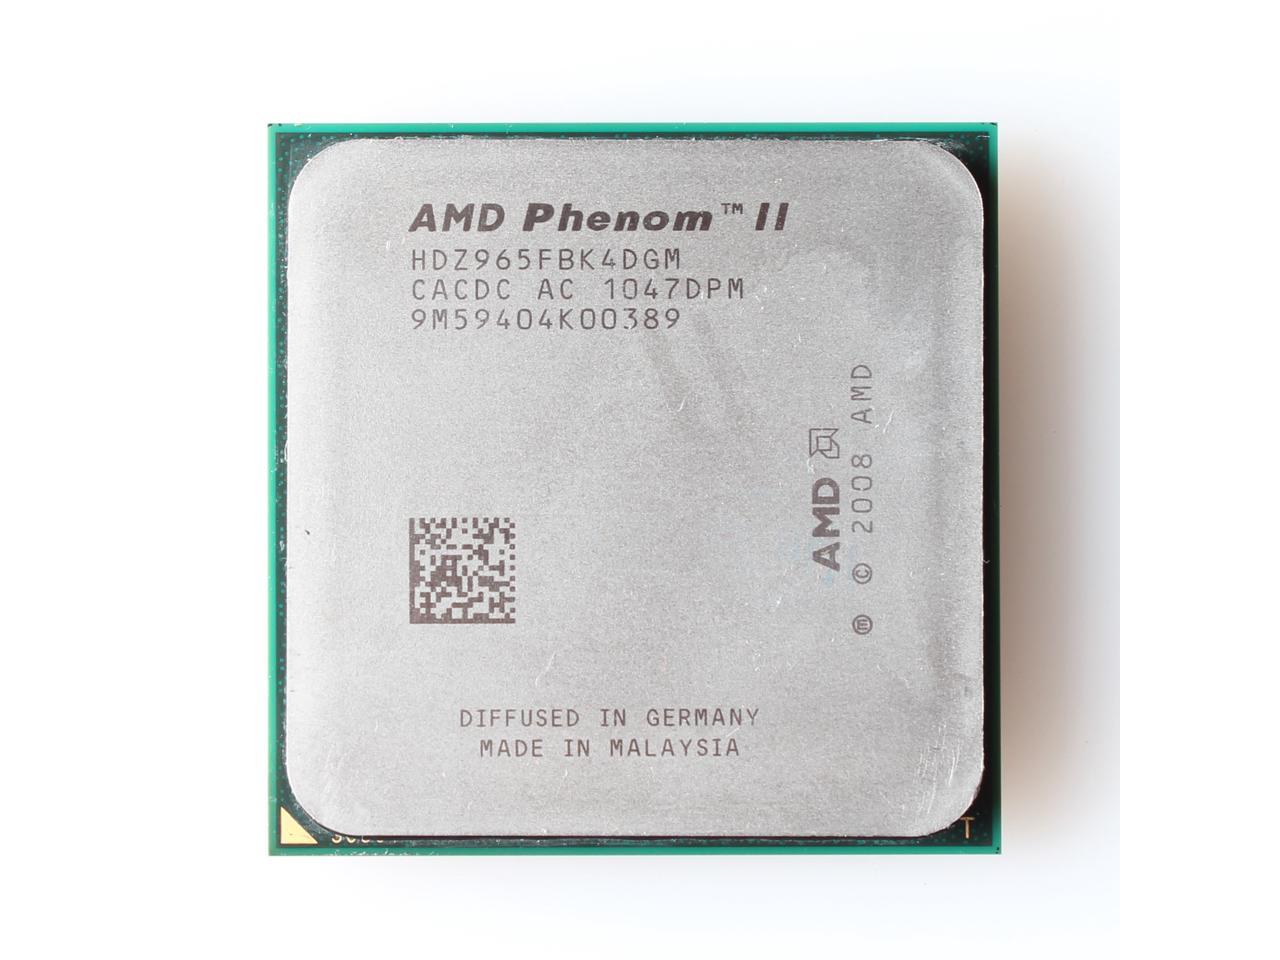 admire Preservative navigation AMD Phenom II X4 965 Black Edition 3.4 GHz Processor - Newegg.com -  Newegg.com